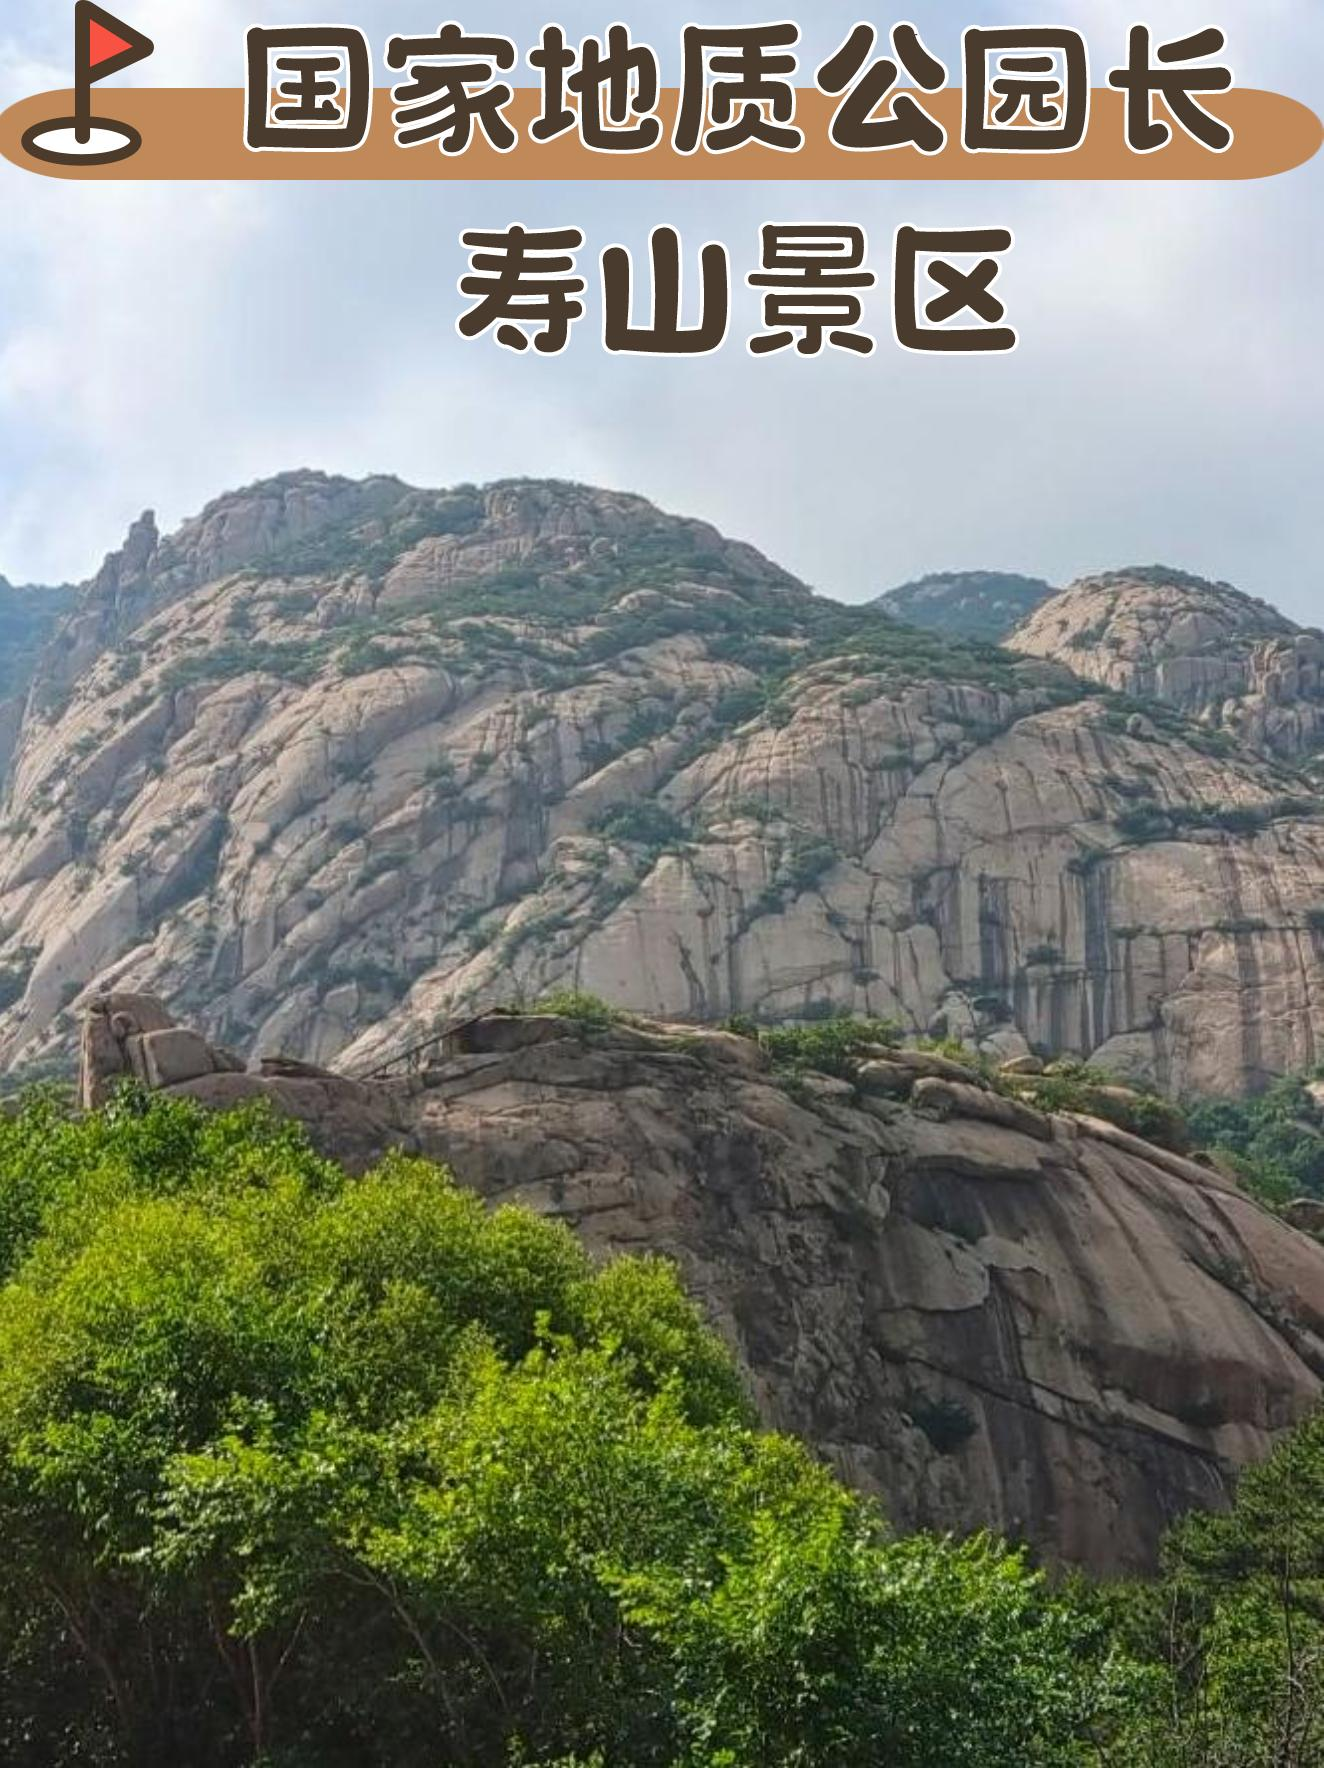 国家地质公园长寿山景区 位置:秦皇岛市山海关区三道关村 景区评分